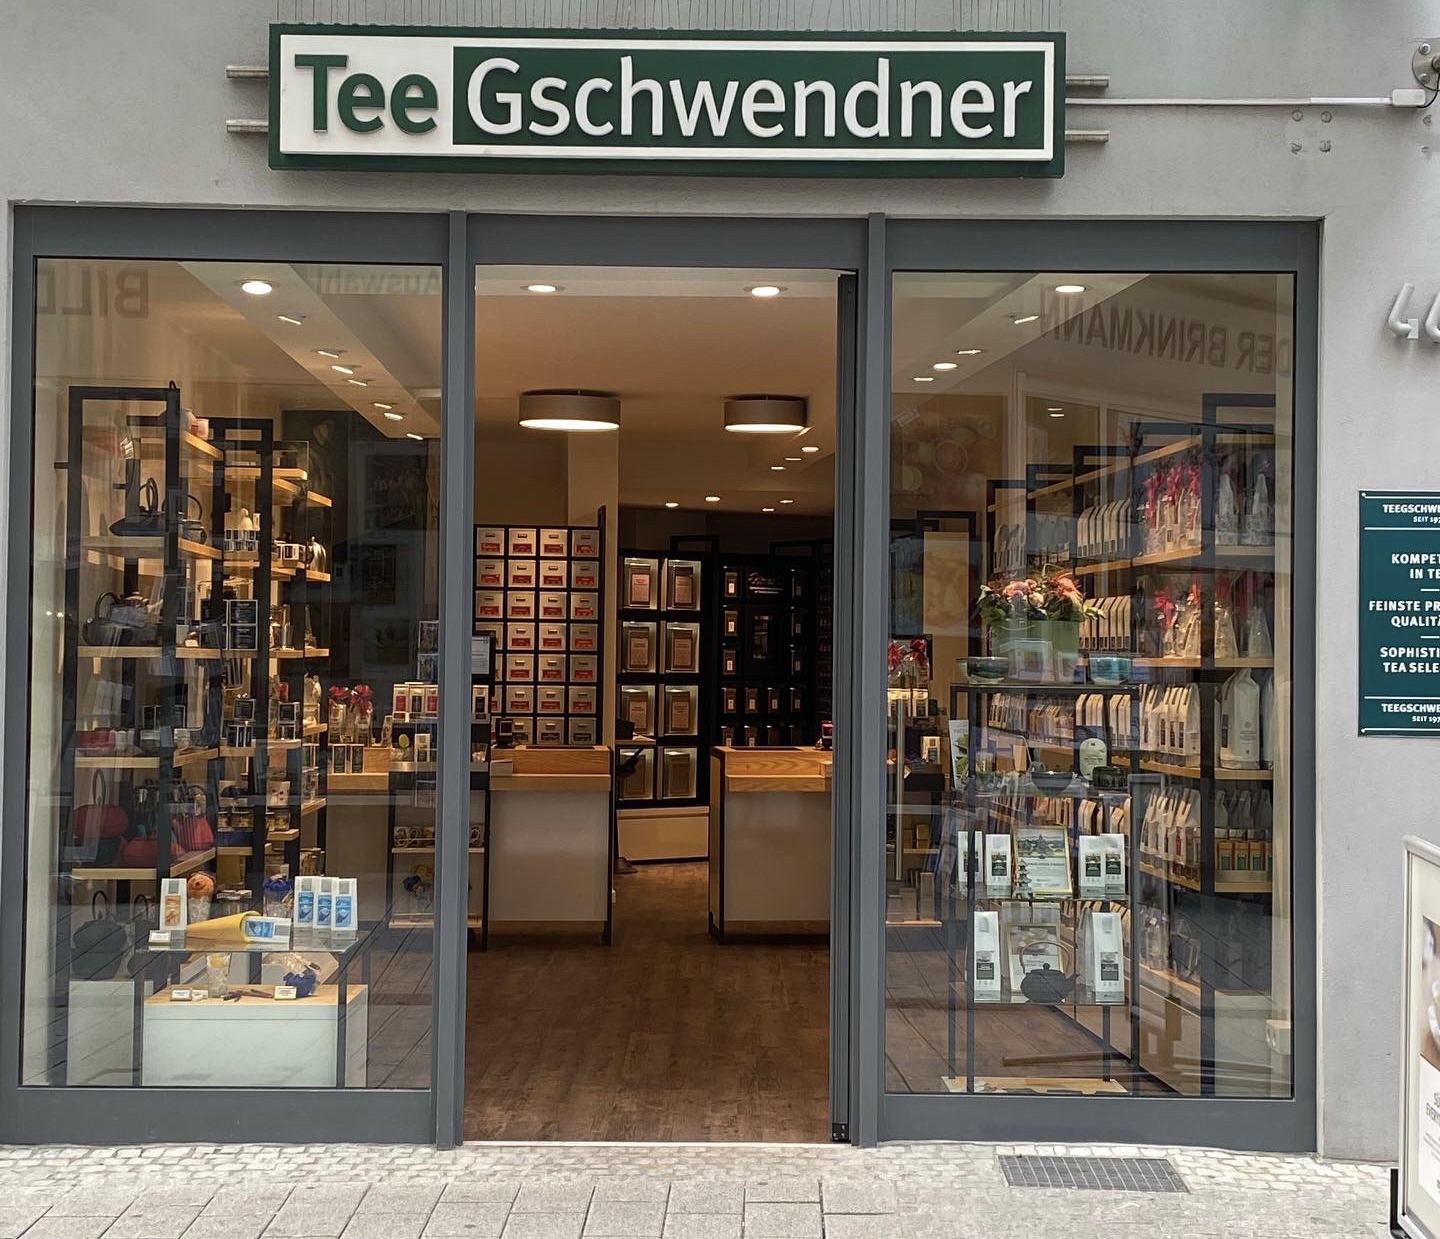 Titelbild des Unternehmens: TeeGschwendner in Wuppertal